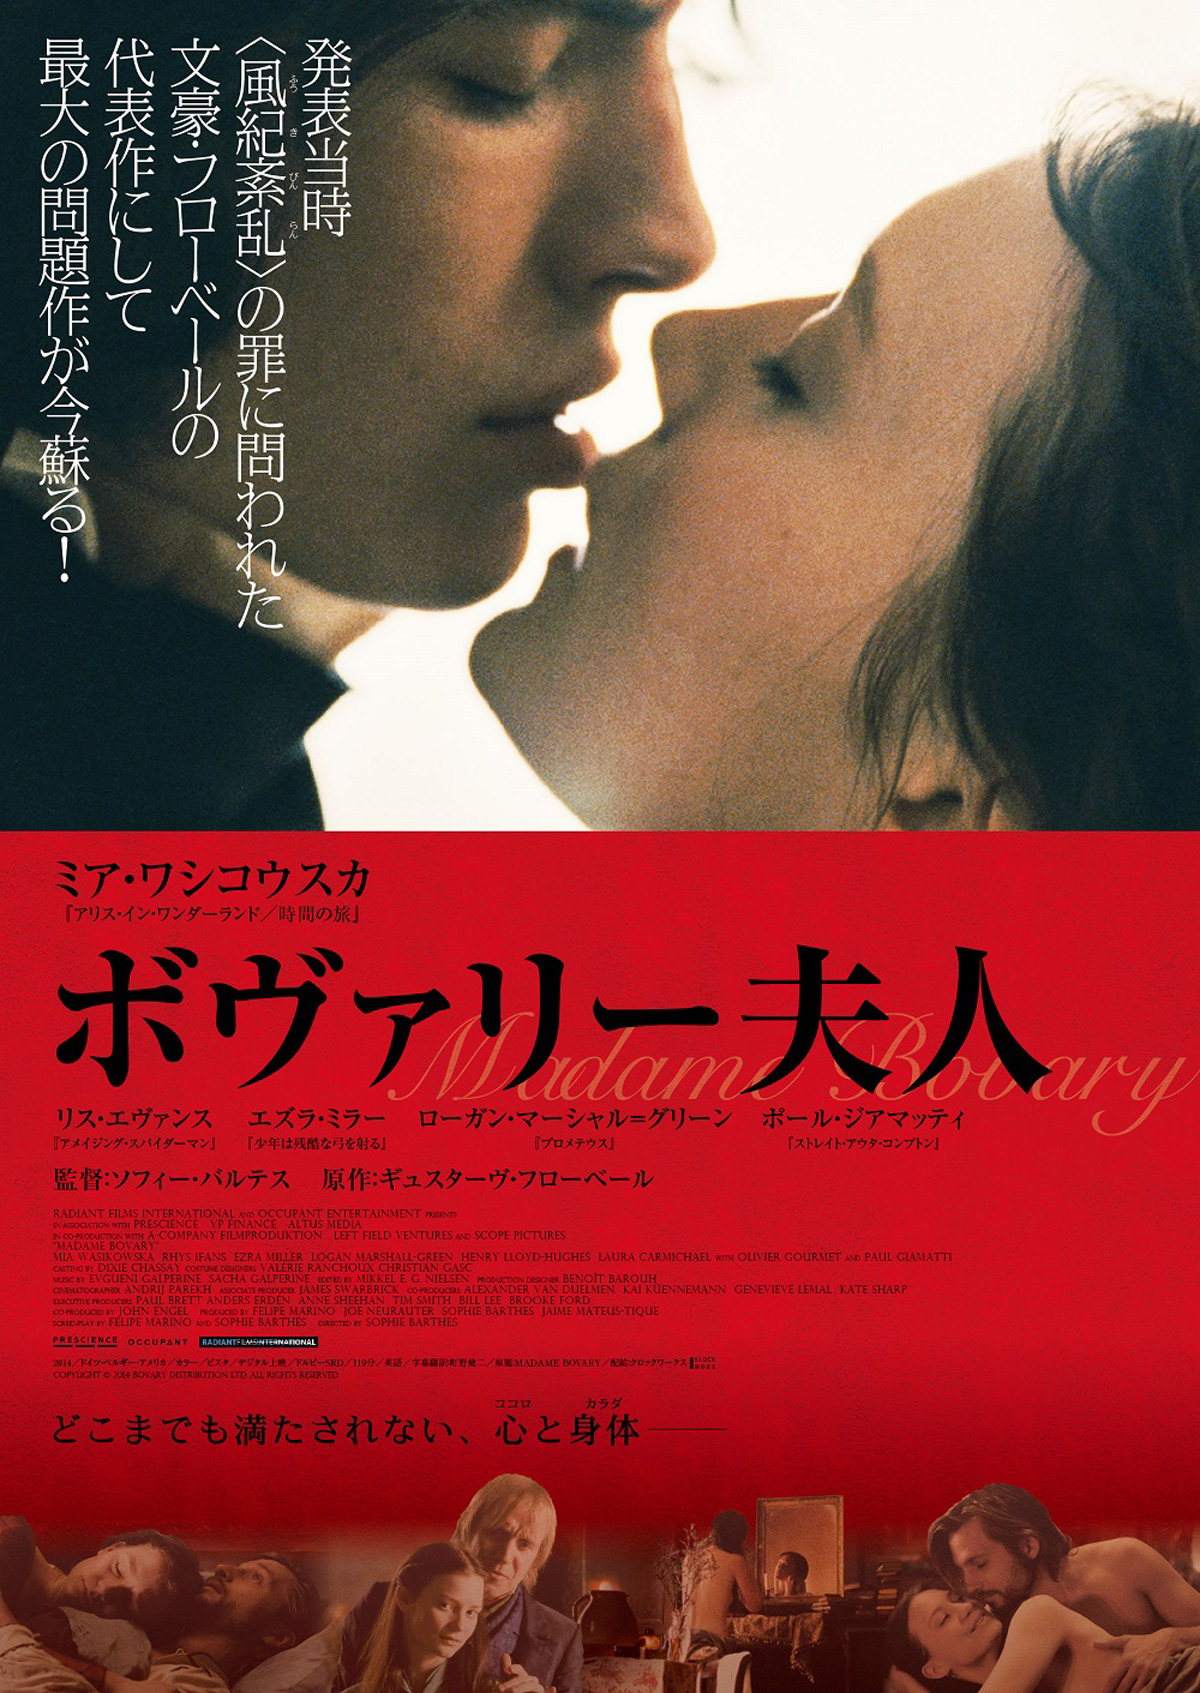 ボヴァリー夫人 の映画レビュー・感想・評価 - Yahoo!映画